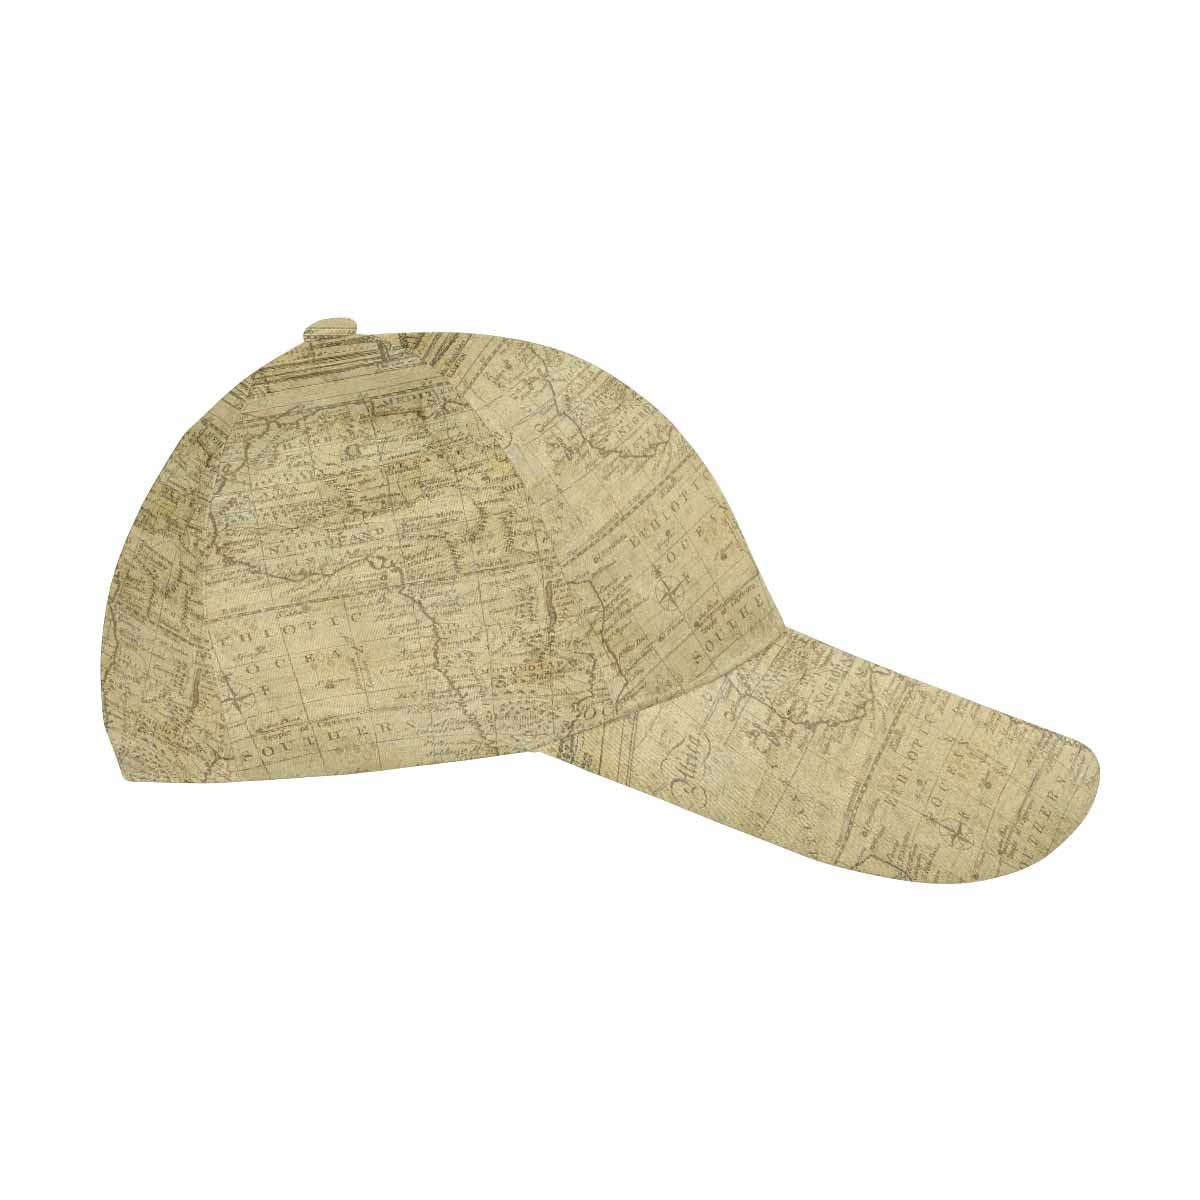 Antique Map design dad cap, trucker hat, Design 1